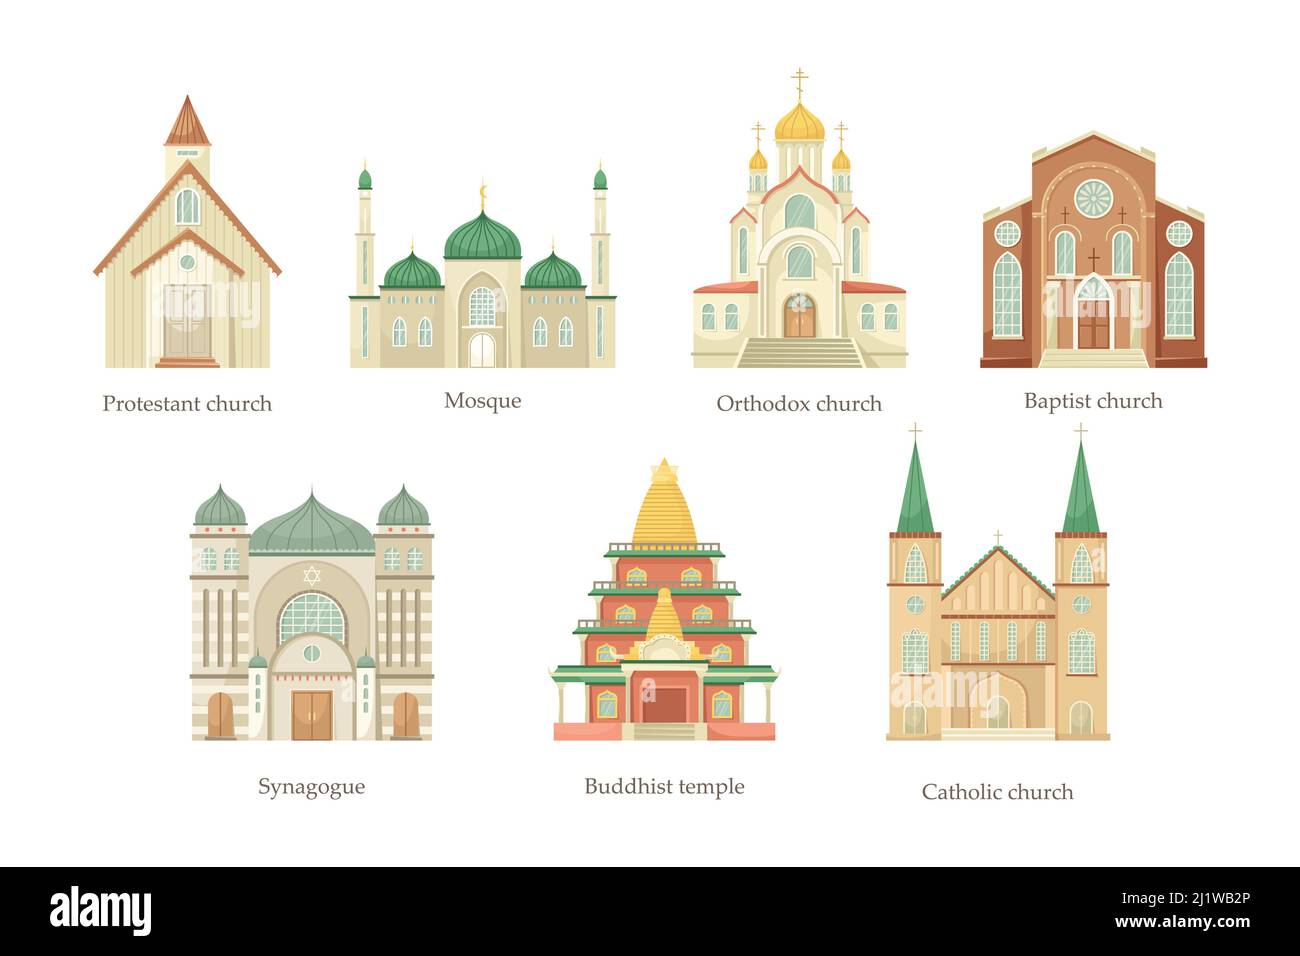 Vektor-Set von Illustrationen von Kirchen verschiedener religiöser Konfessionen. Religiöses Architekturgebäude. Stock Vektor